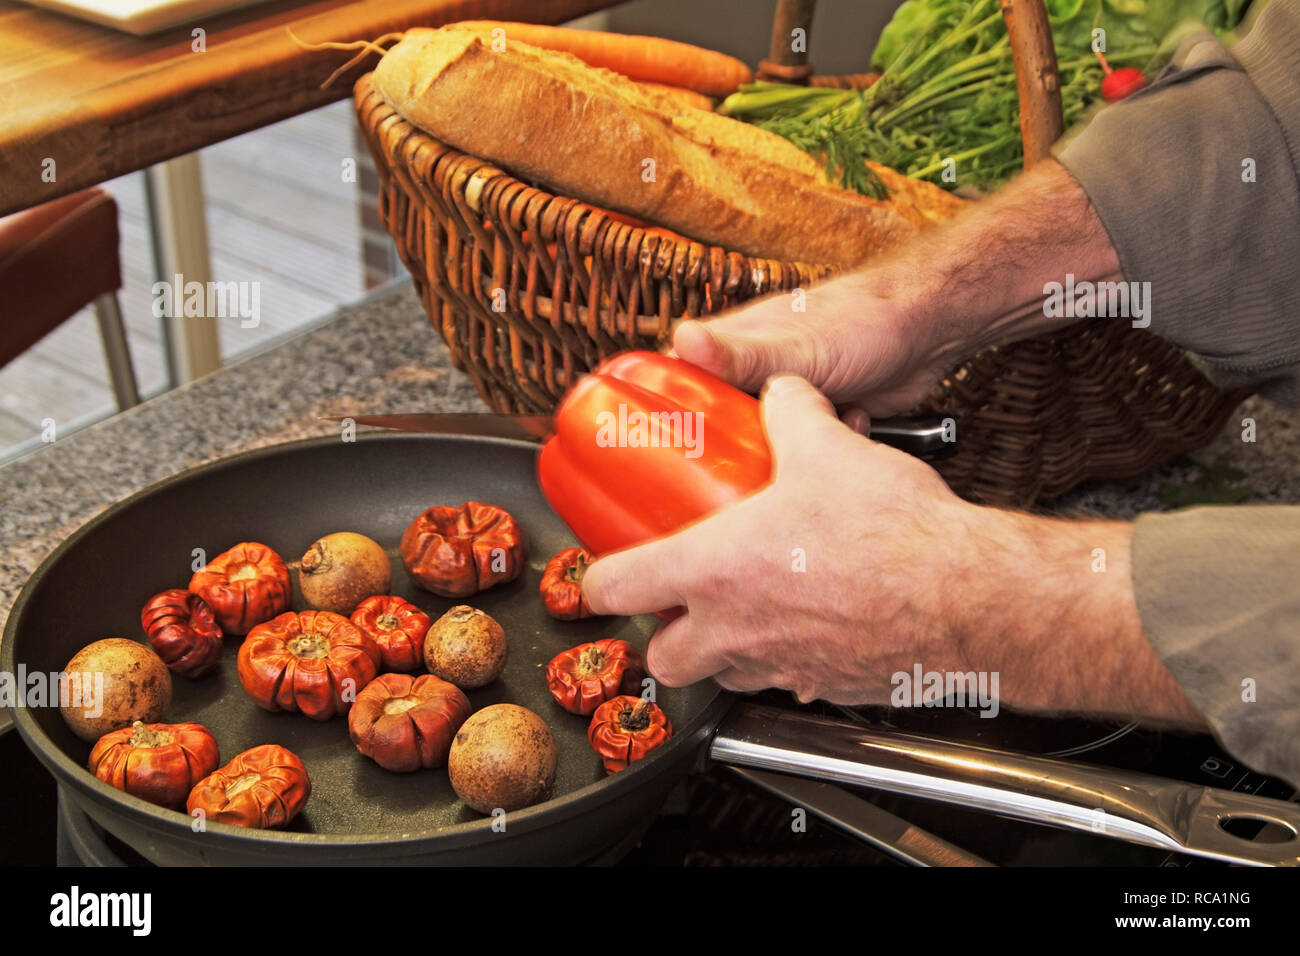 Nahaufnahme von Händen beim Kochen | Closeup of hands cooking Stock Photo